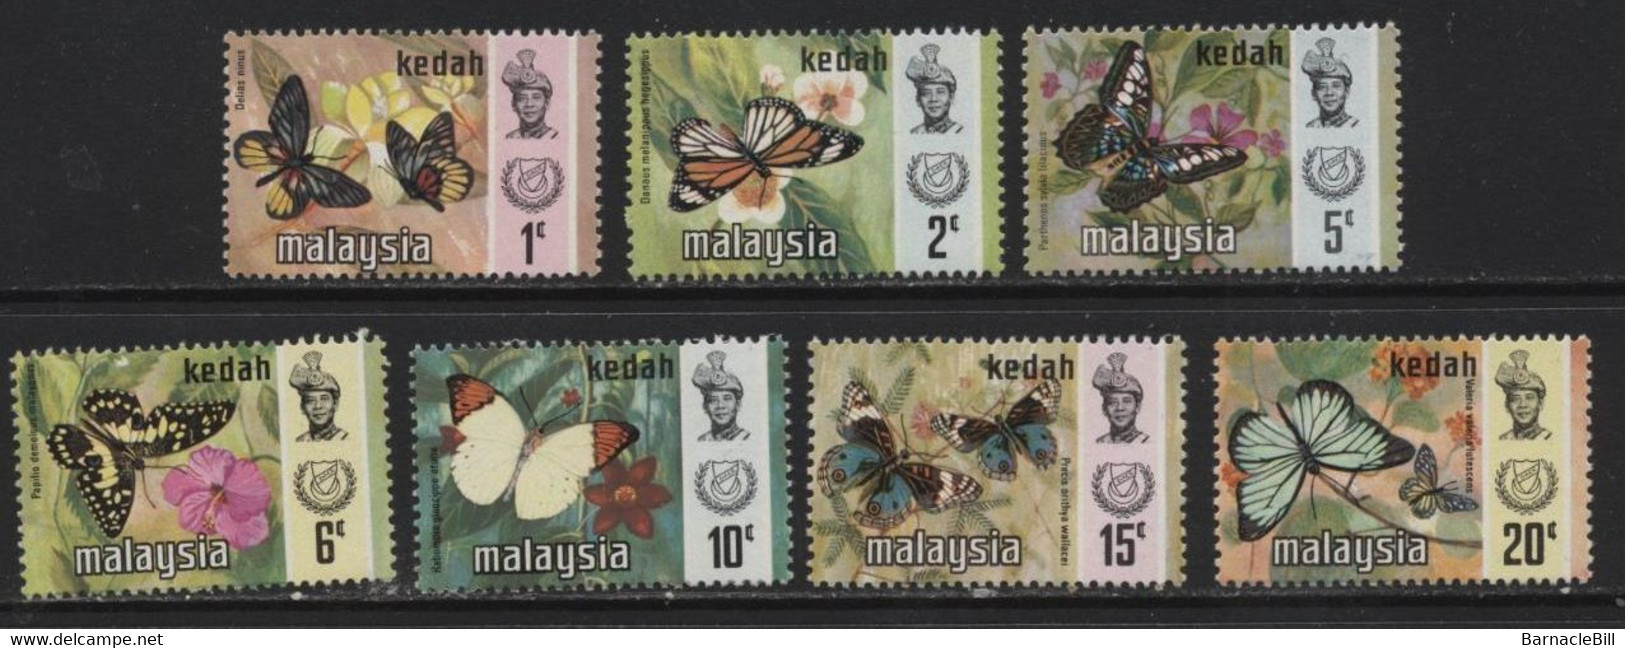 Kedah (12) 1971 Butterflies Set. Unused. Hinged - Kedah